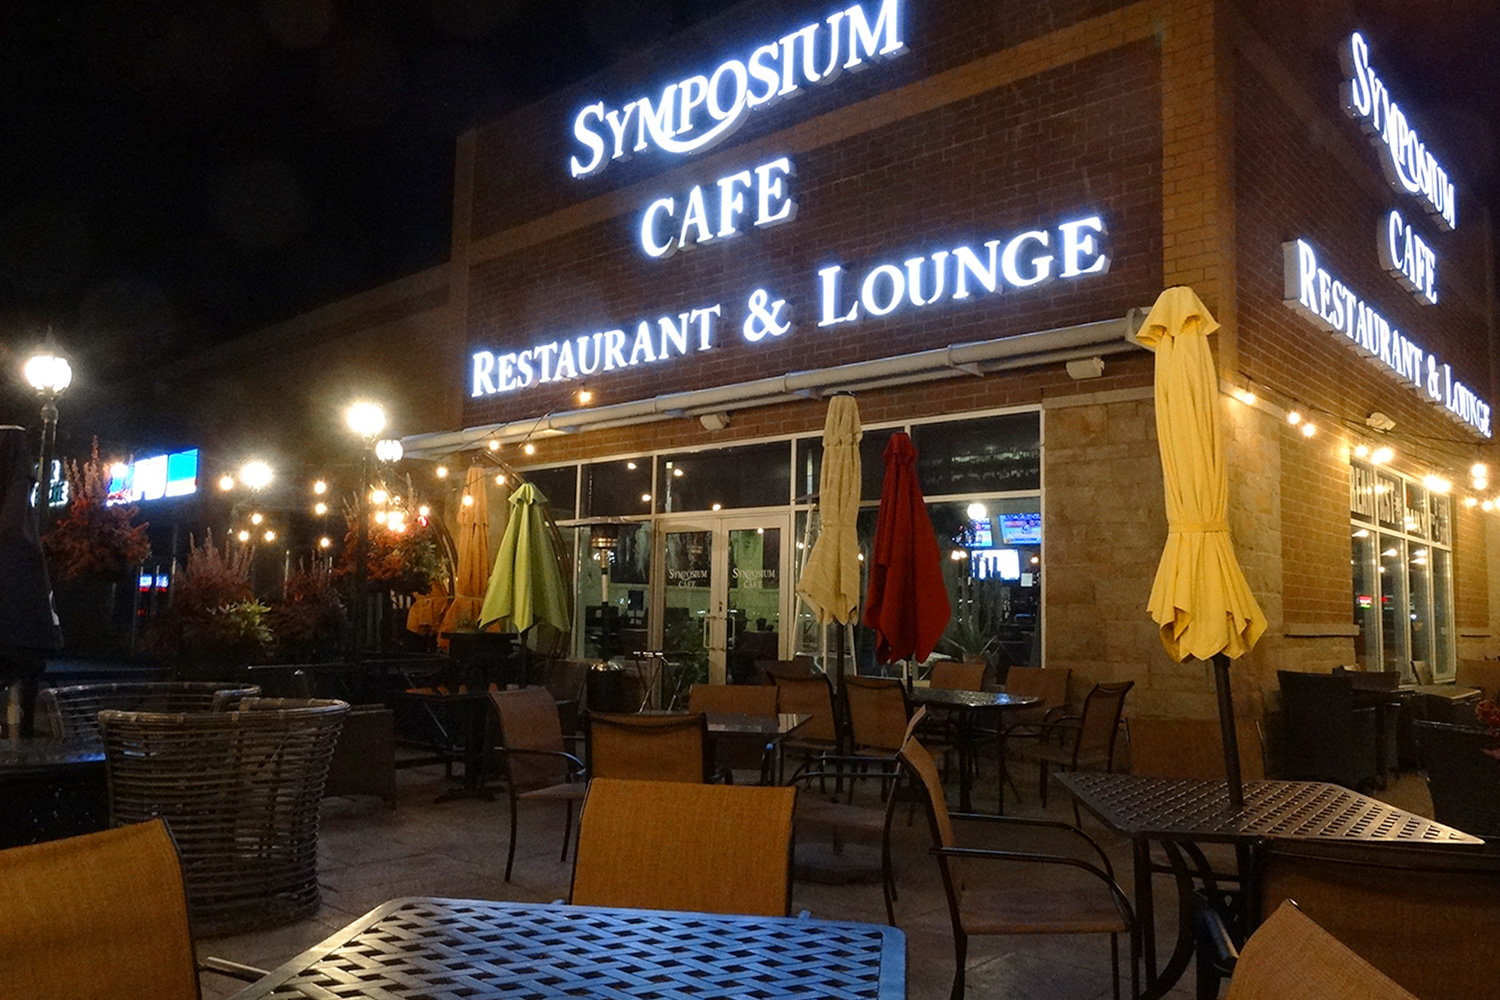 Ancaster Exterior - Symposium Cafe Restaurant